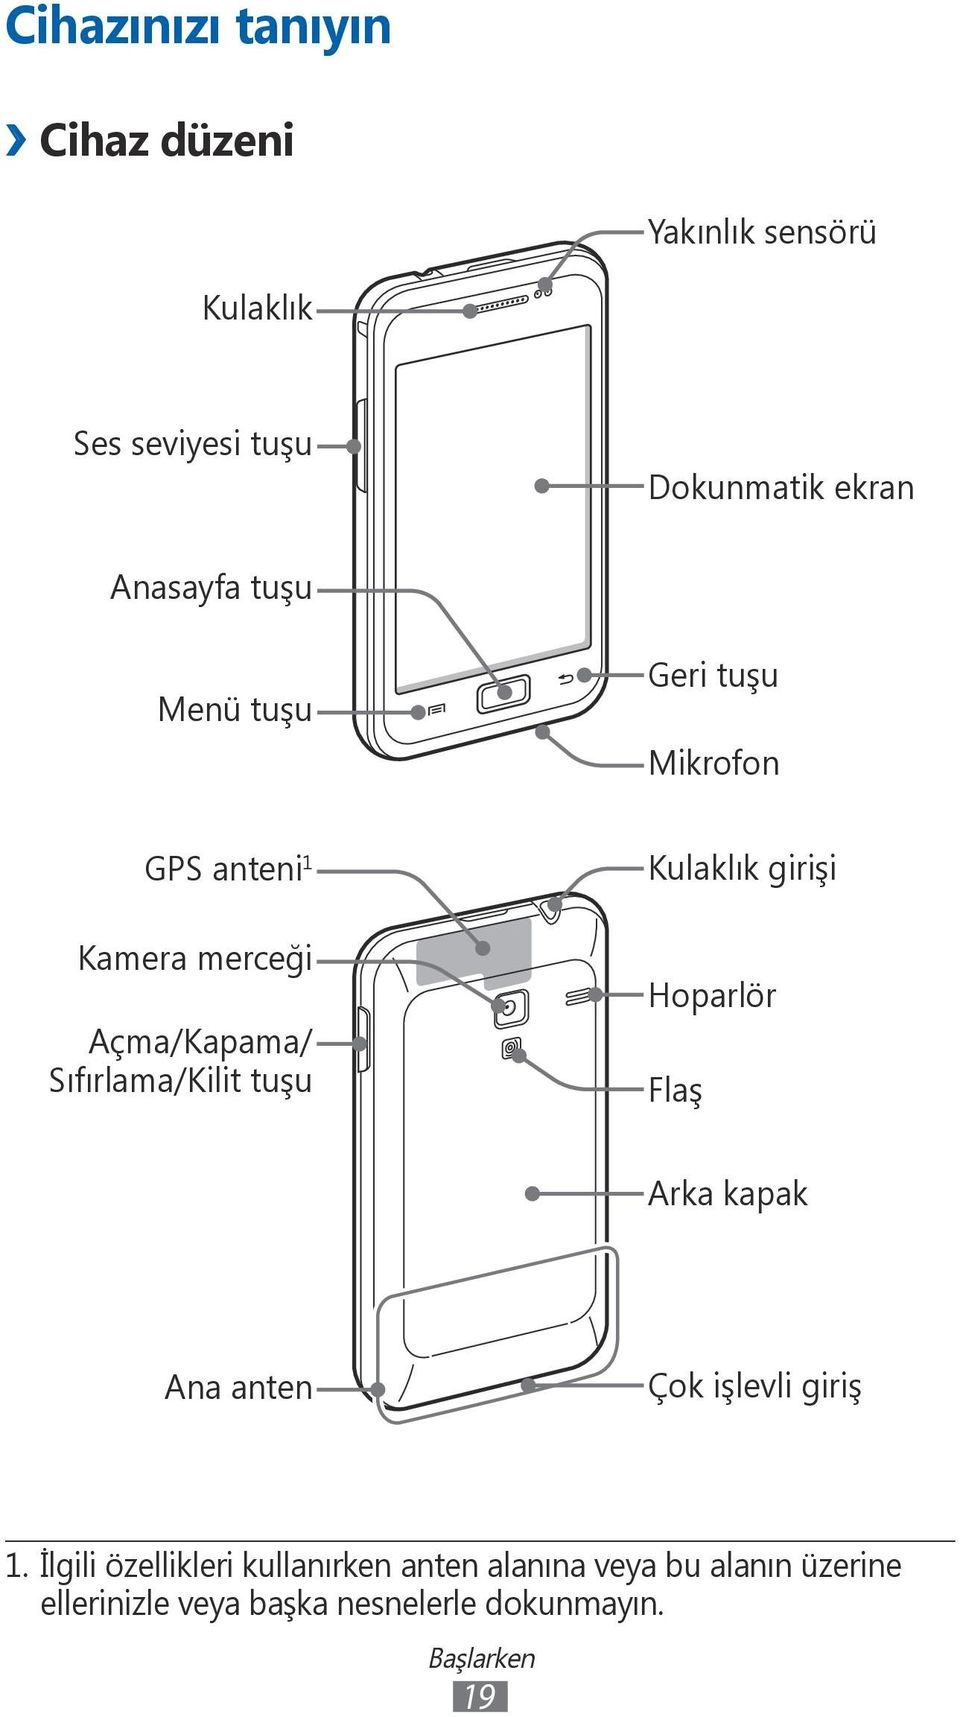 Sıfırlama/Kilit tuşu Kulaklık girişi Hoparlör Flaş Arka kapak Ana anten Çok işlevli giriş 1.